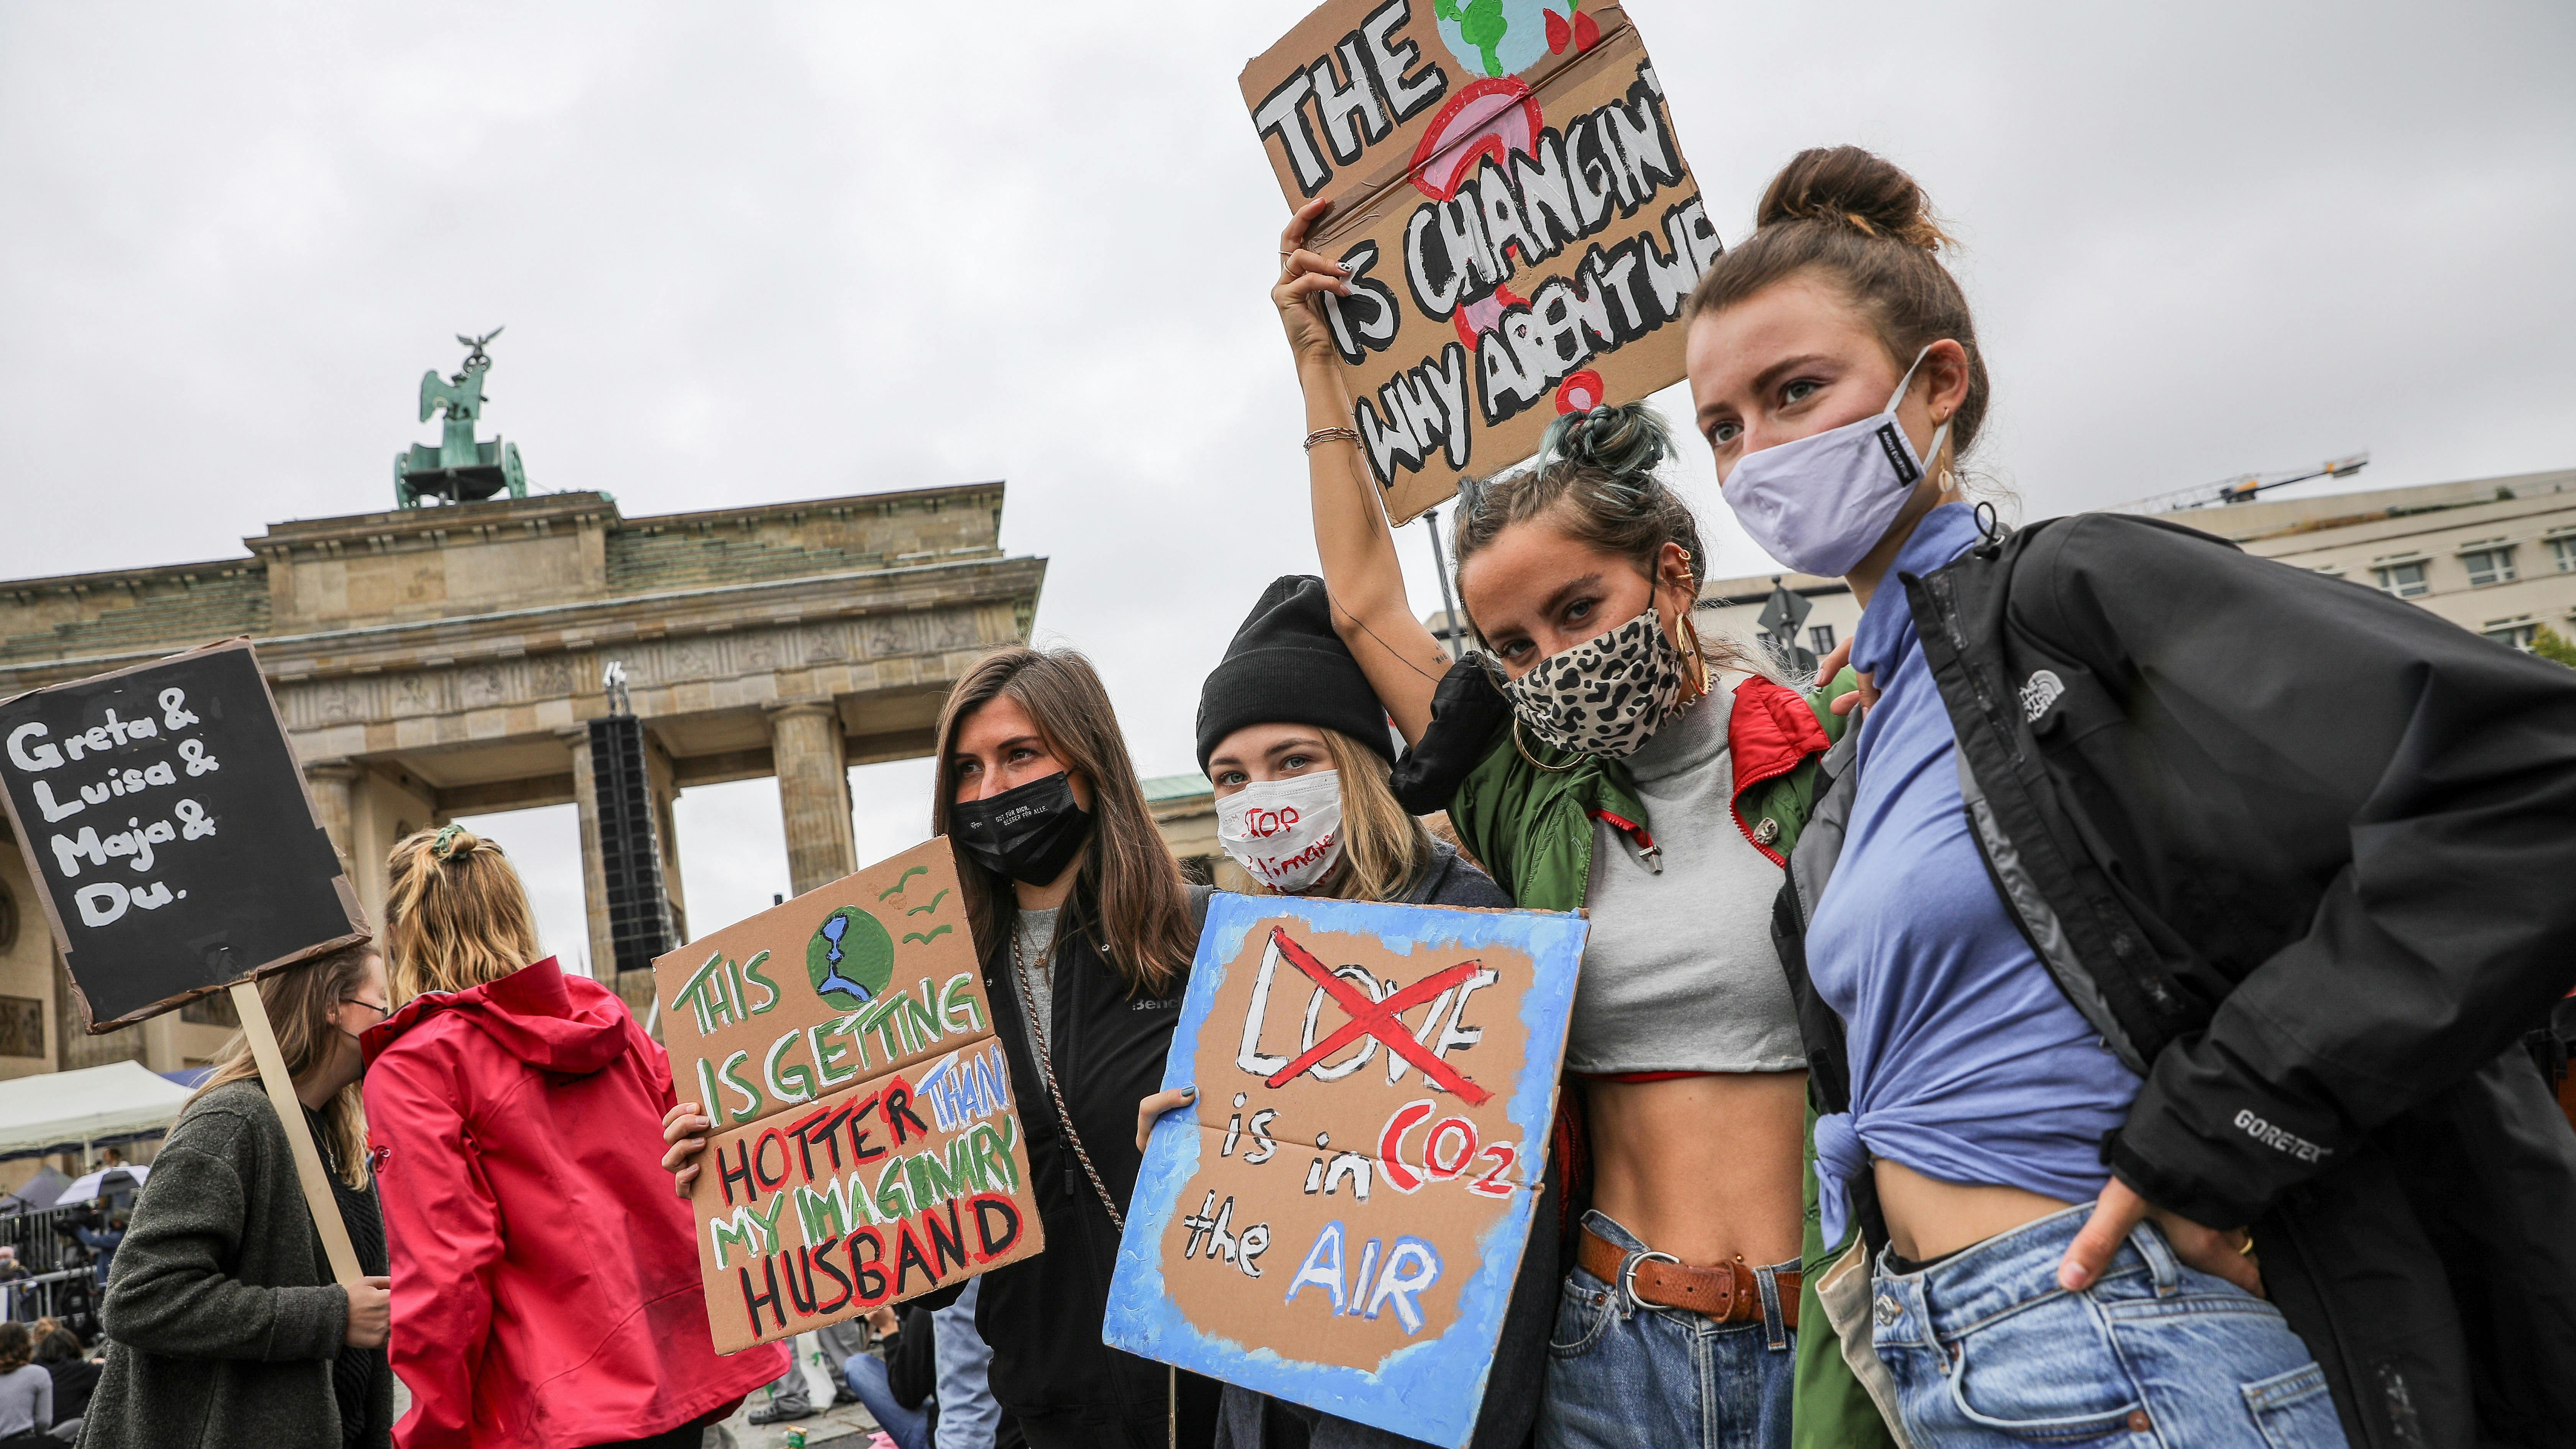 Man sieht weibliche Jugendliche bei einer Klima-Demo vor dem Brandenburger Tor.